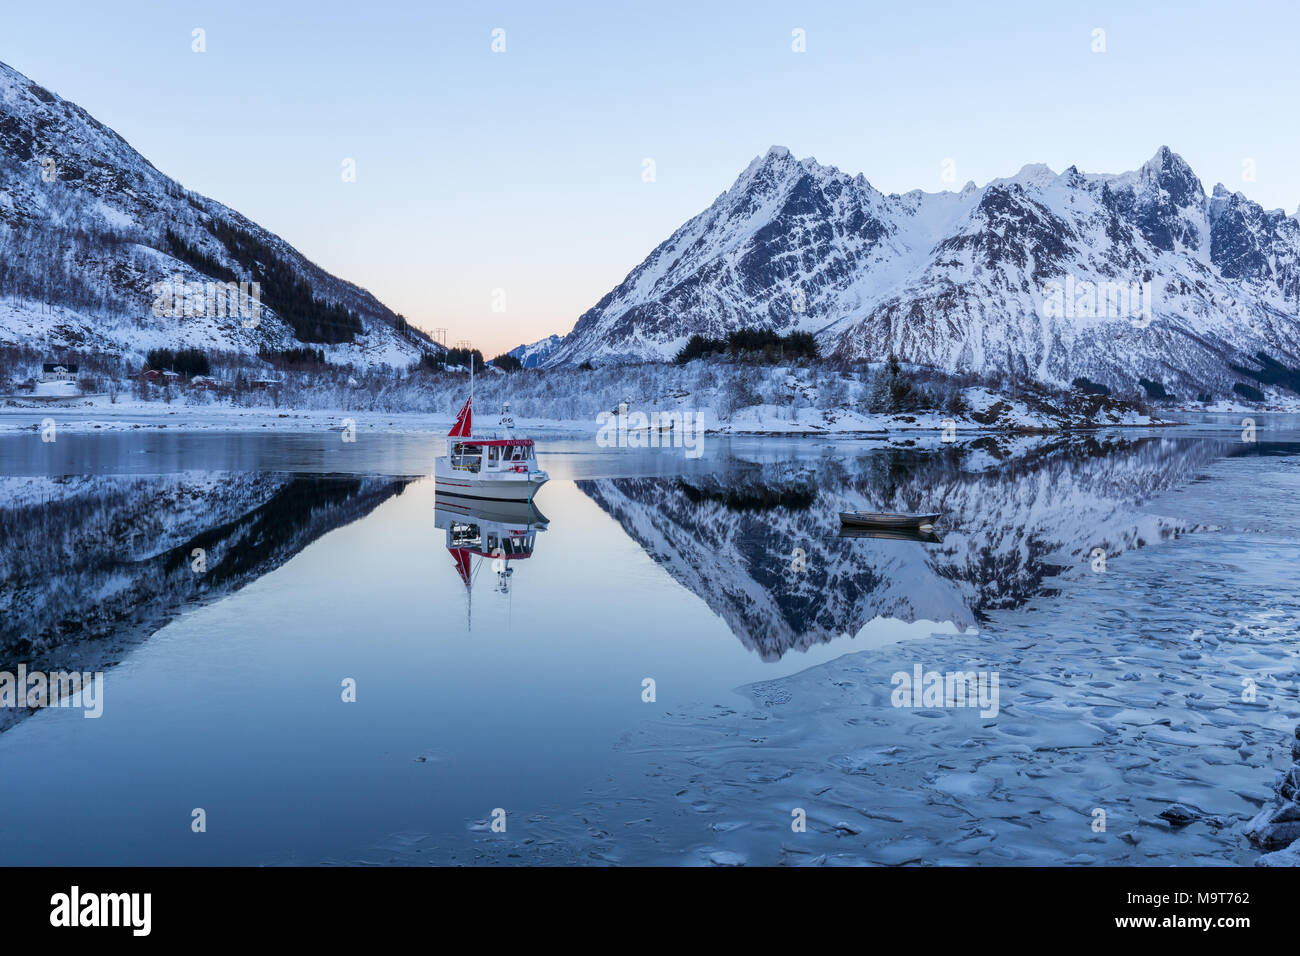 Bateau sur le fjord calme. Paysage d'hiver avec les montagnes enneigées et les reflets dans l'eau et de glace Banque D'Images